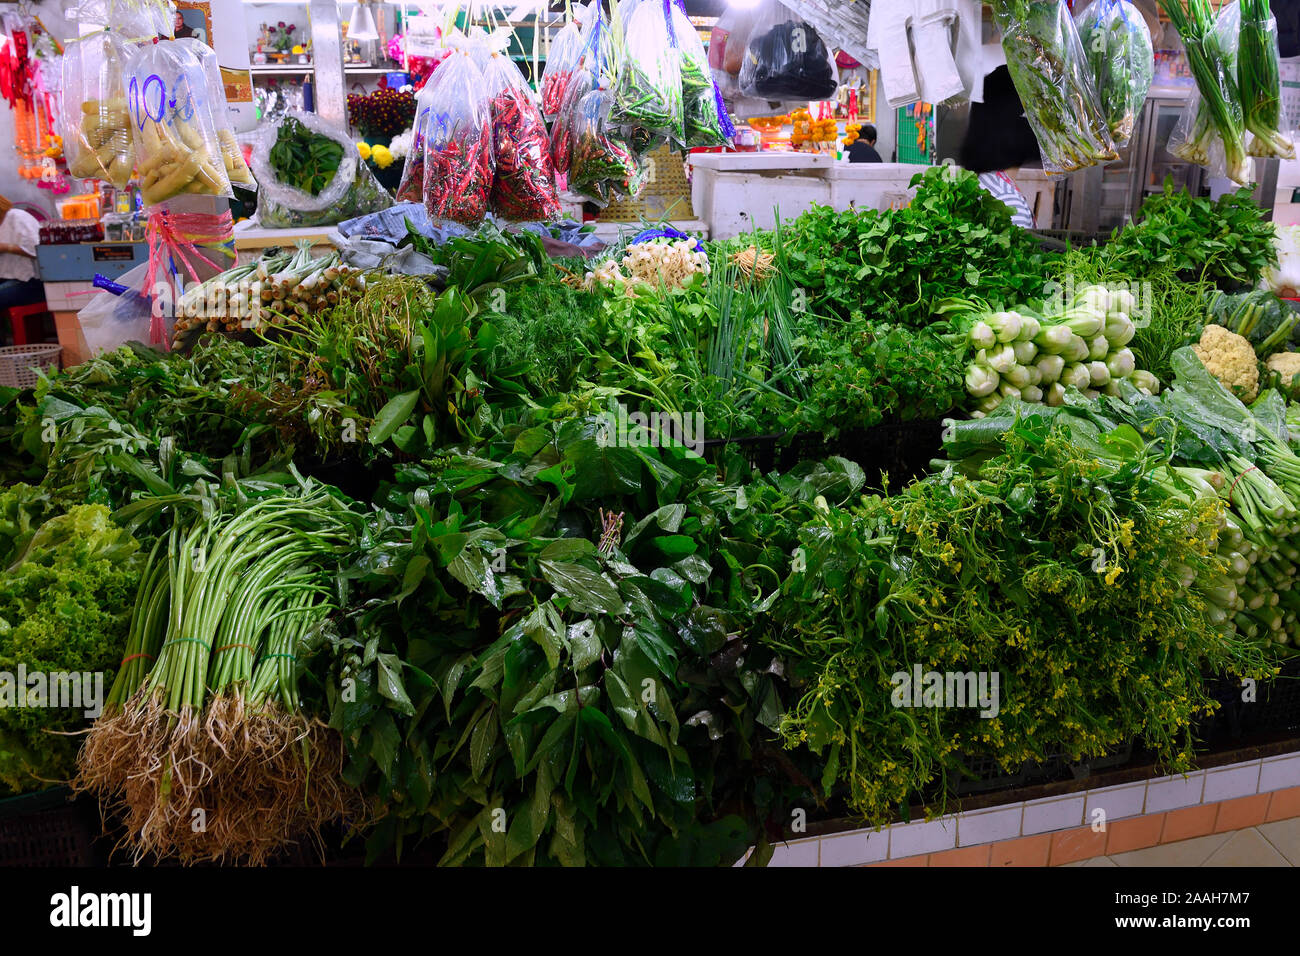 typischer Stand mit riesiger Auswahl an frischen Kräutern und Gewürzen auf dem Banzaan fresh market, Patong Beach, Phuket, Thailand Stock Photo